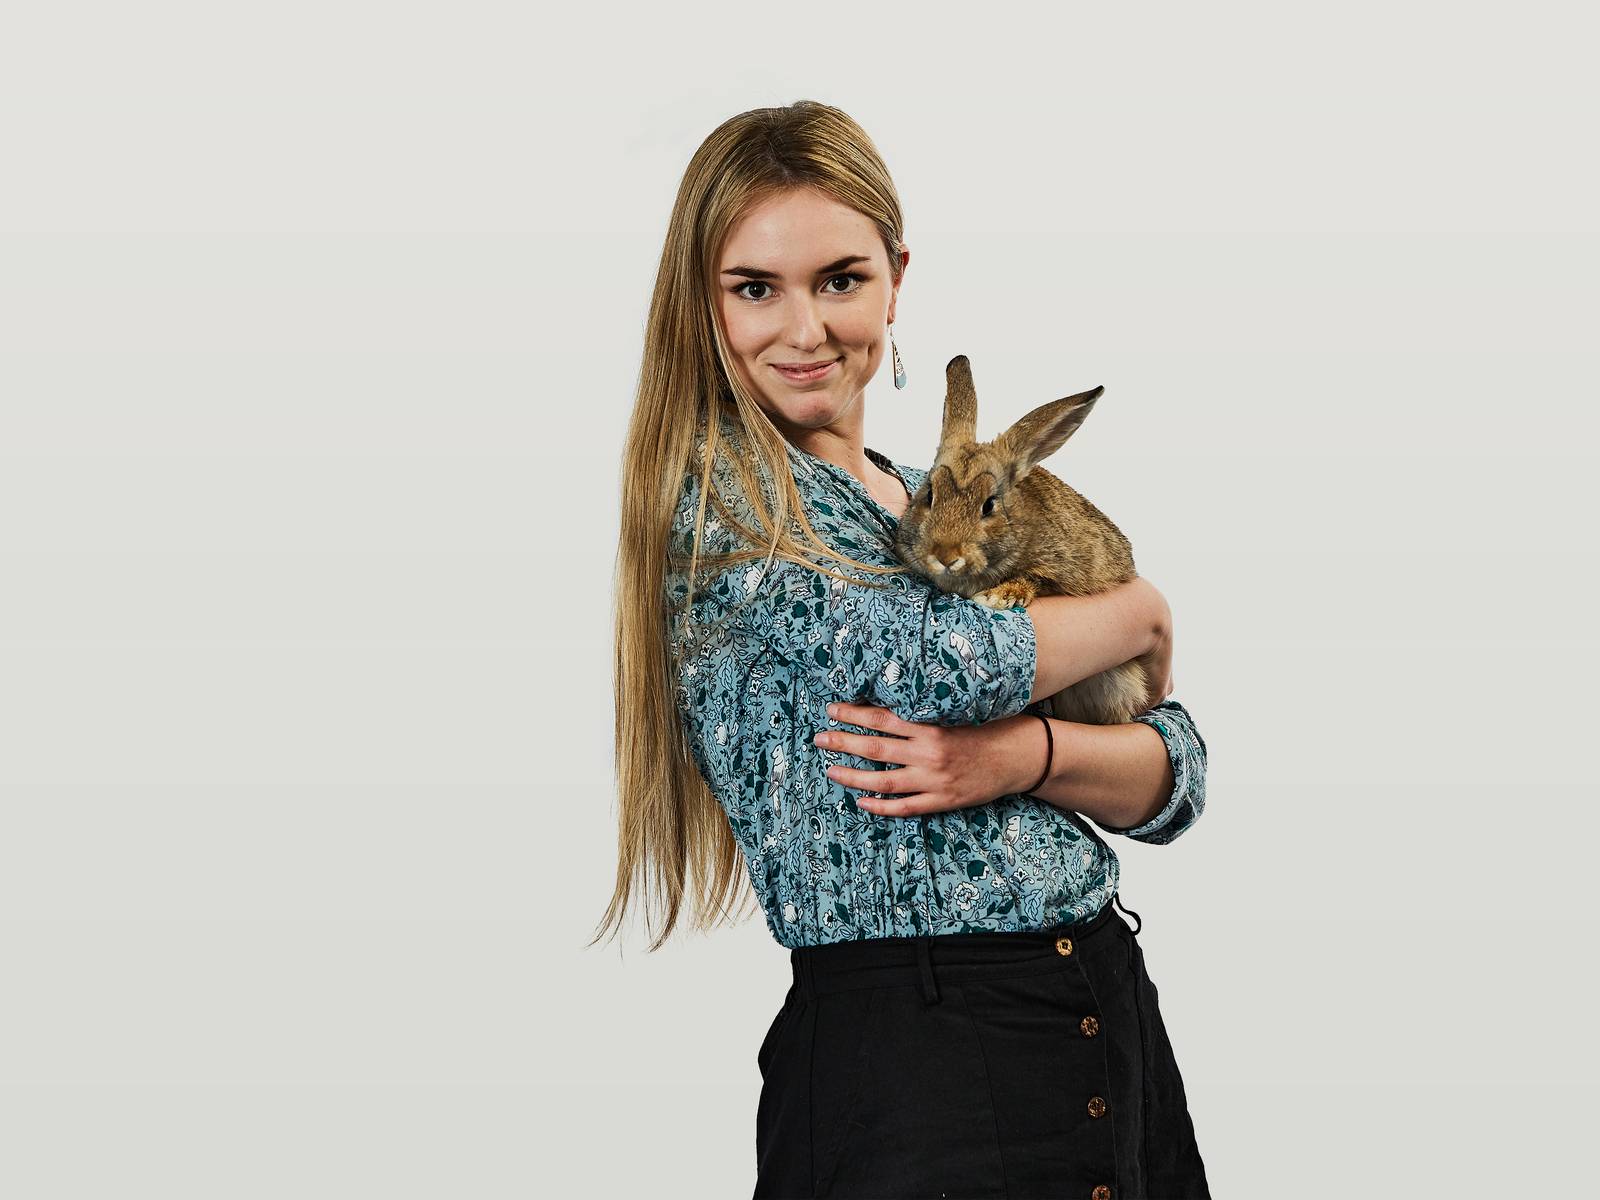 Usha holding her pet rabbit